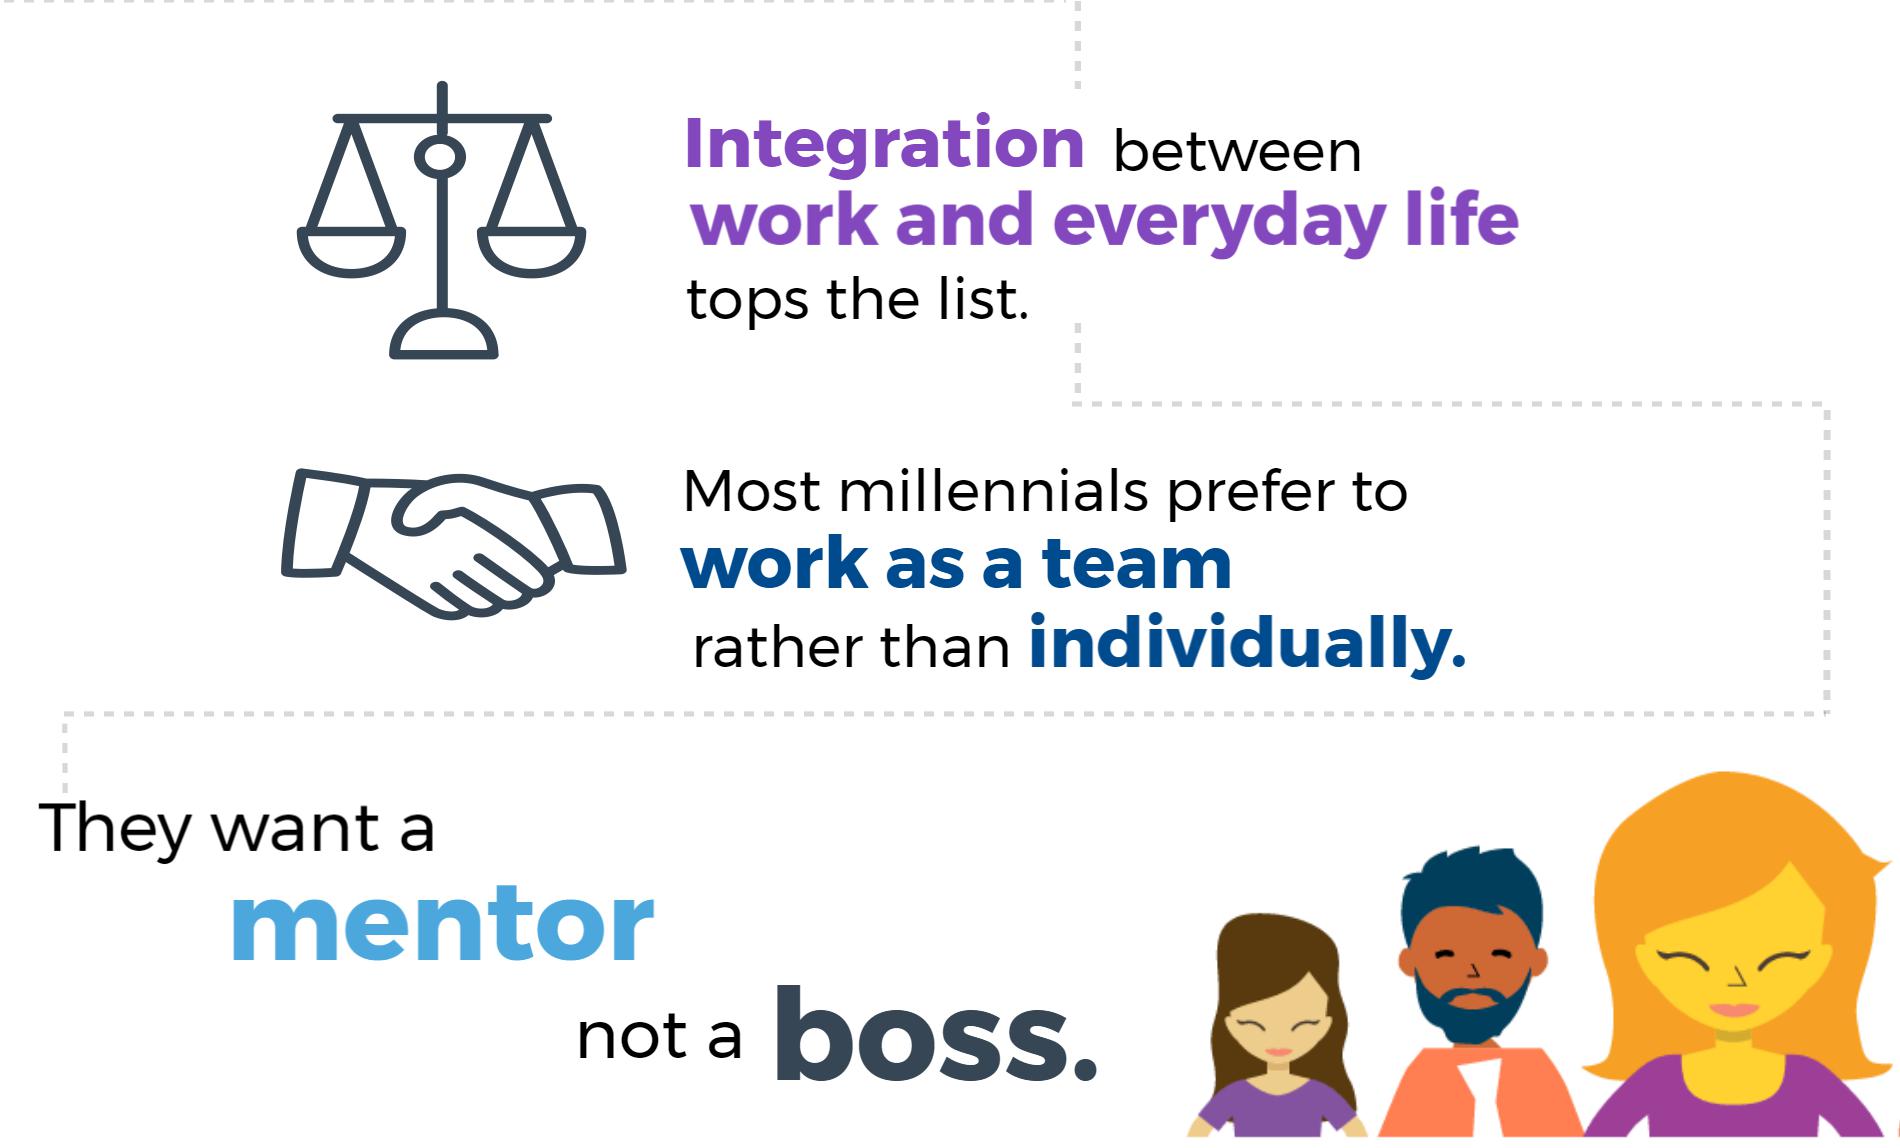 Millennials value mentor in an employer